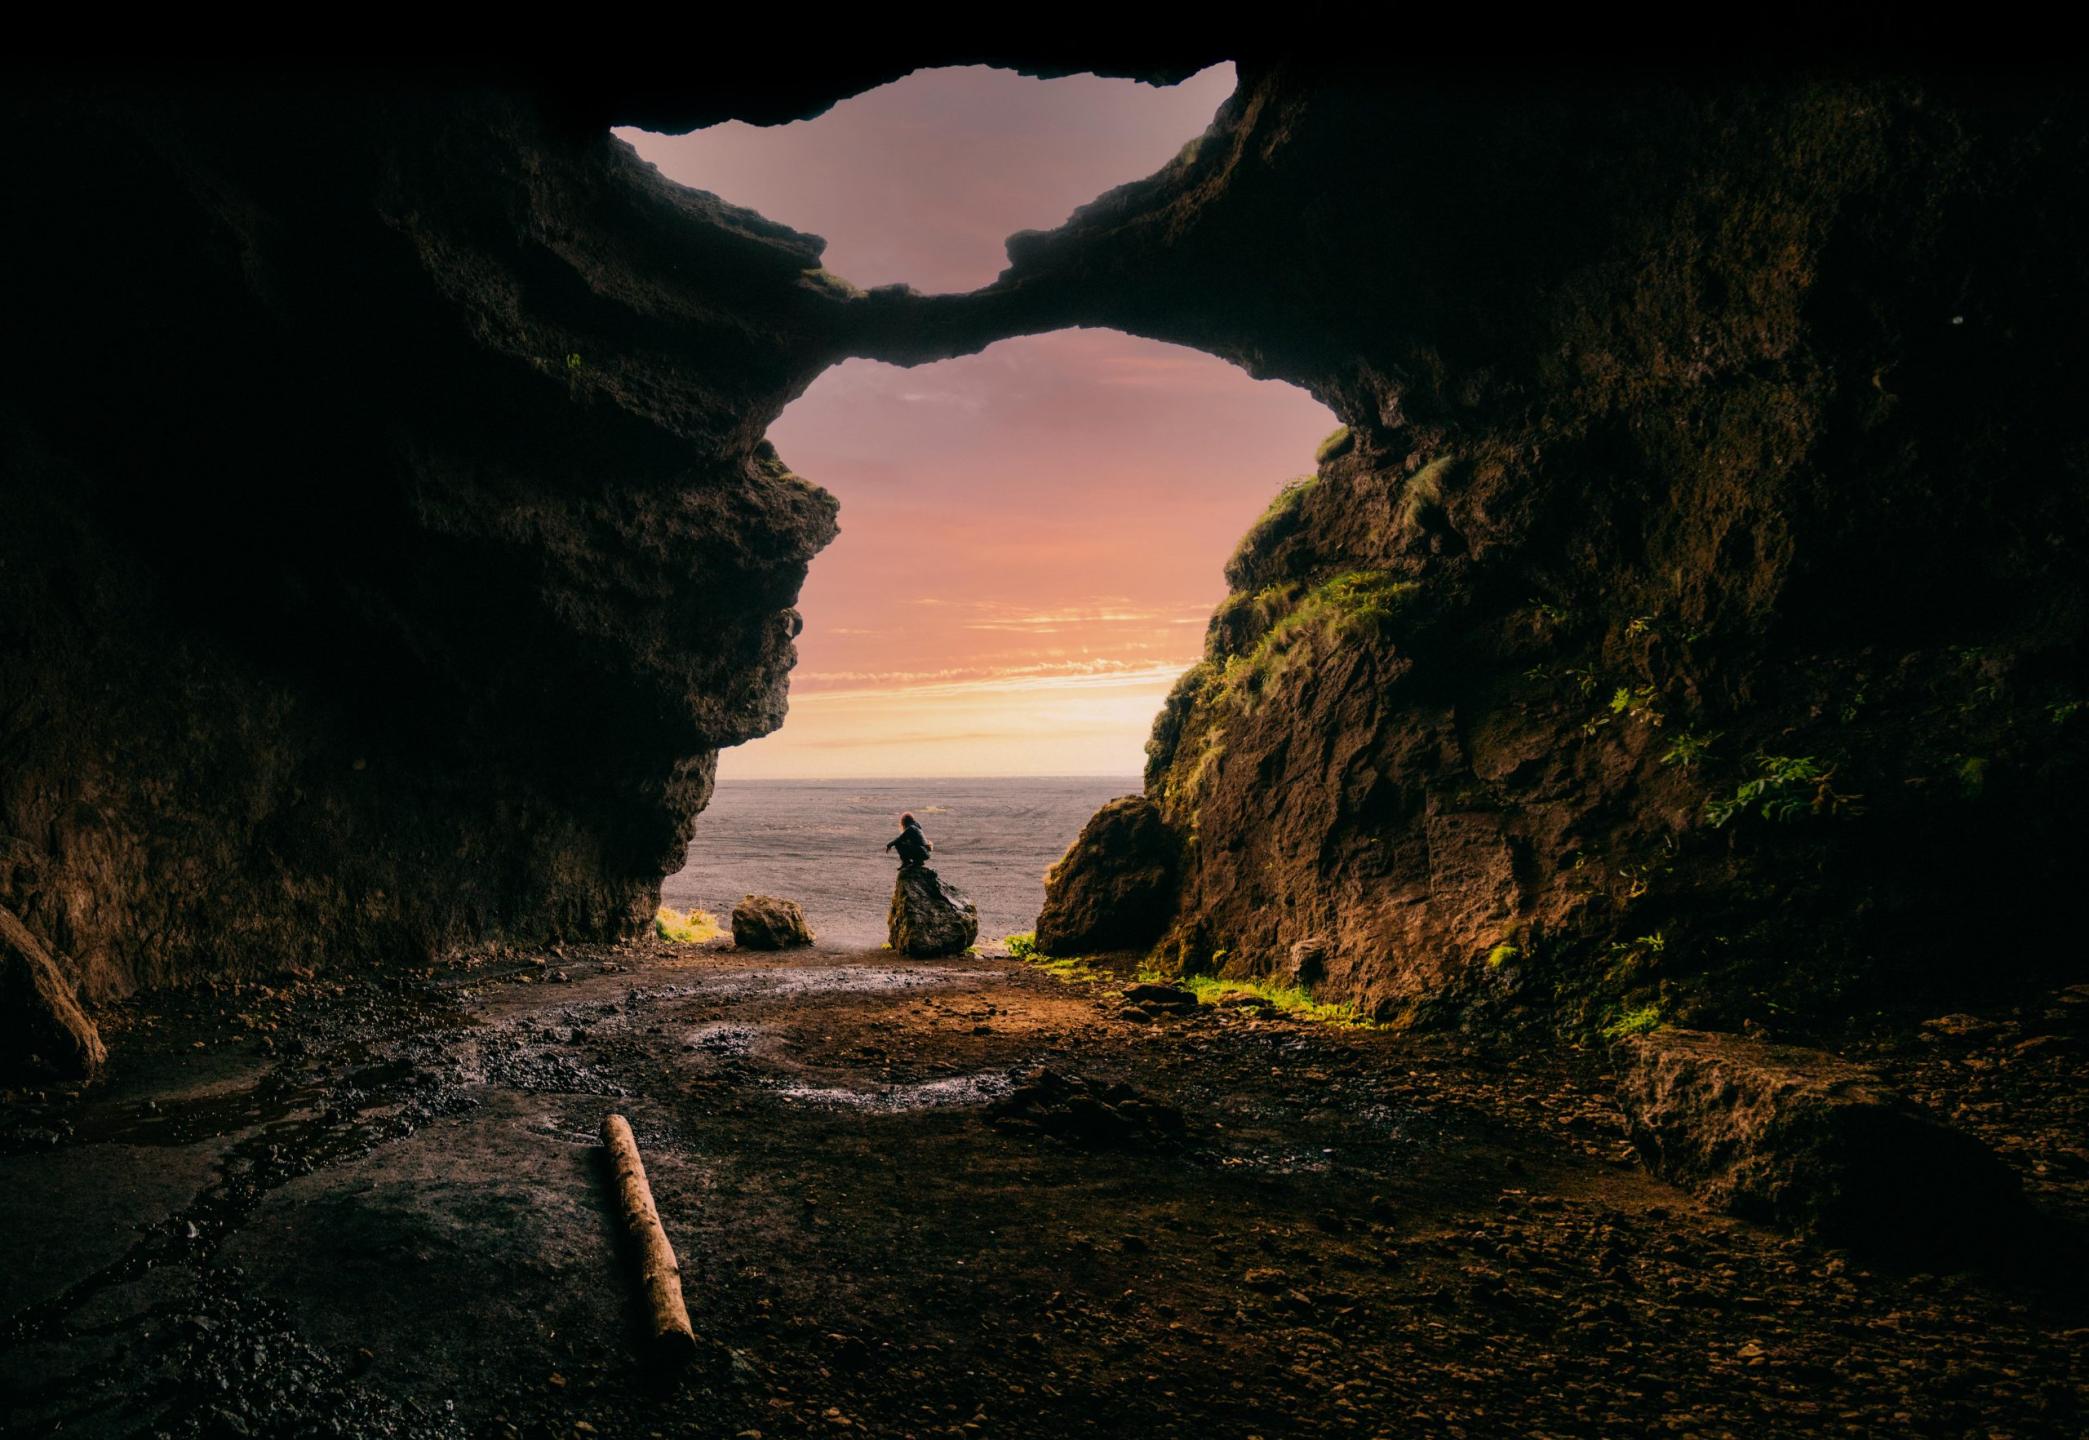 Yoda cave in Iceland – Hjörleifshöfði